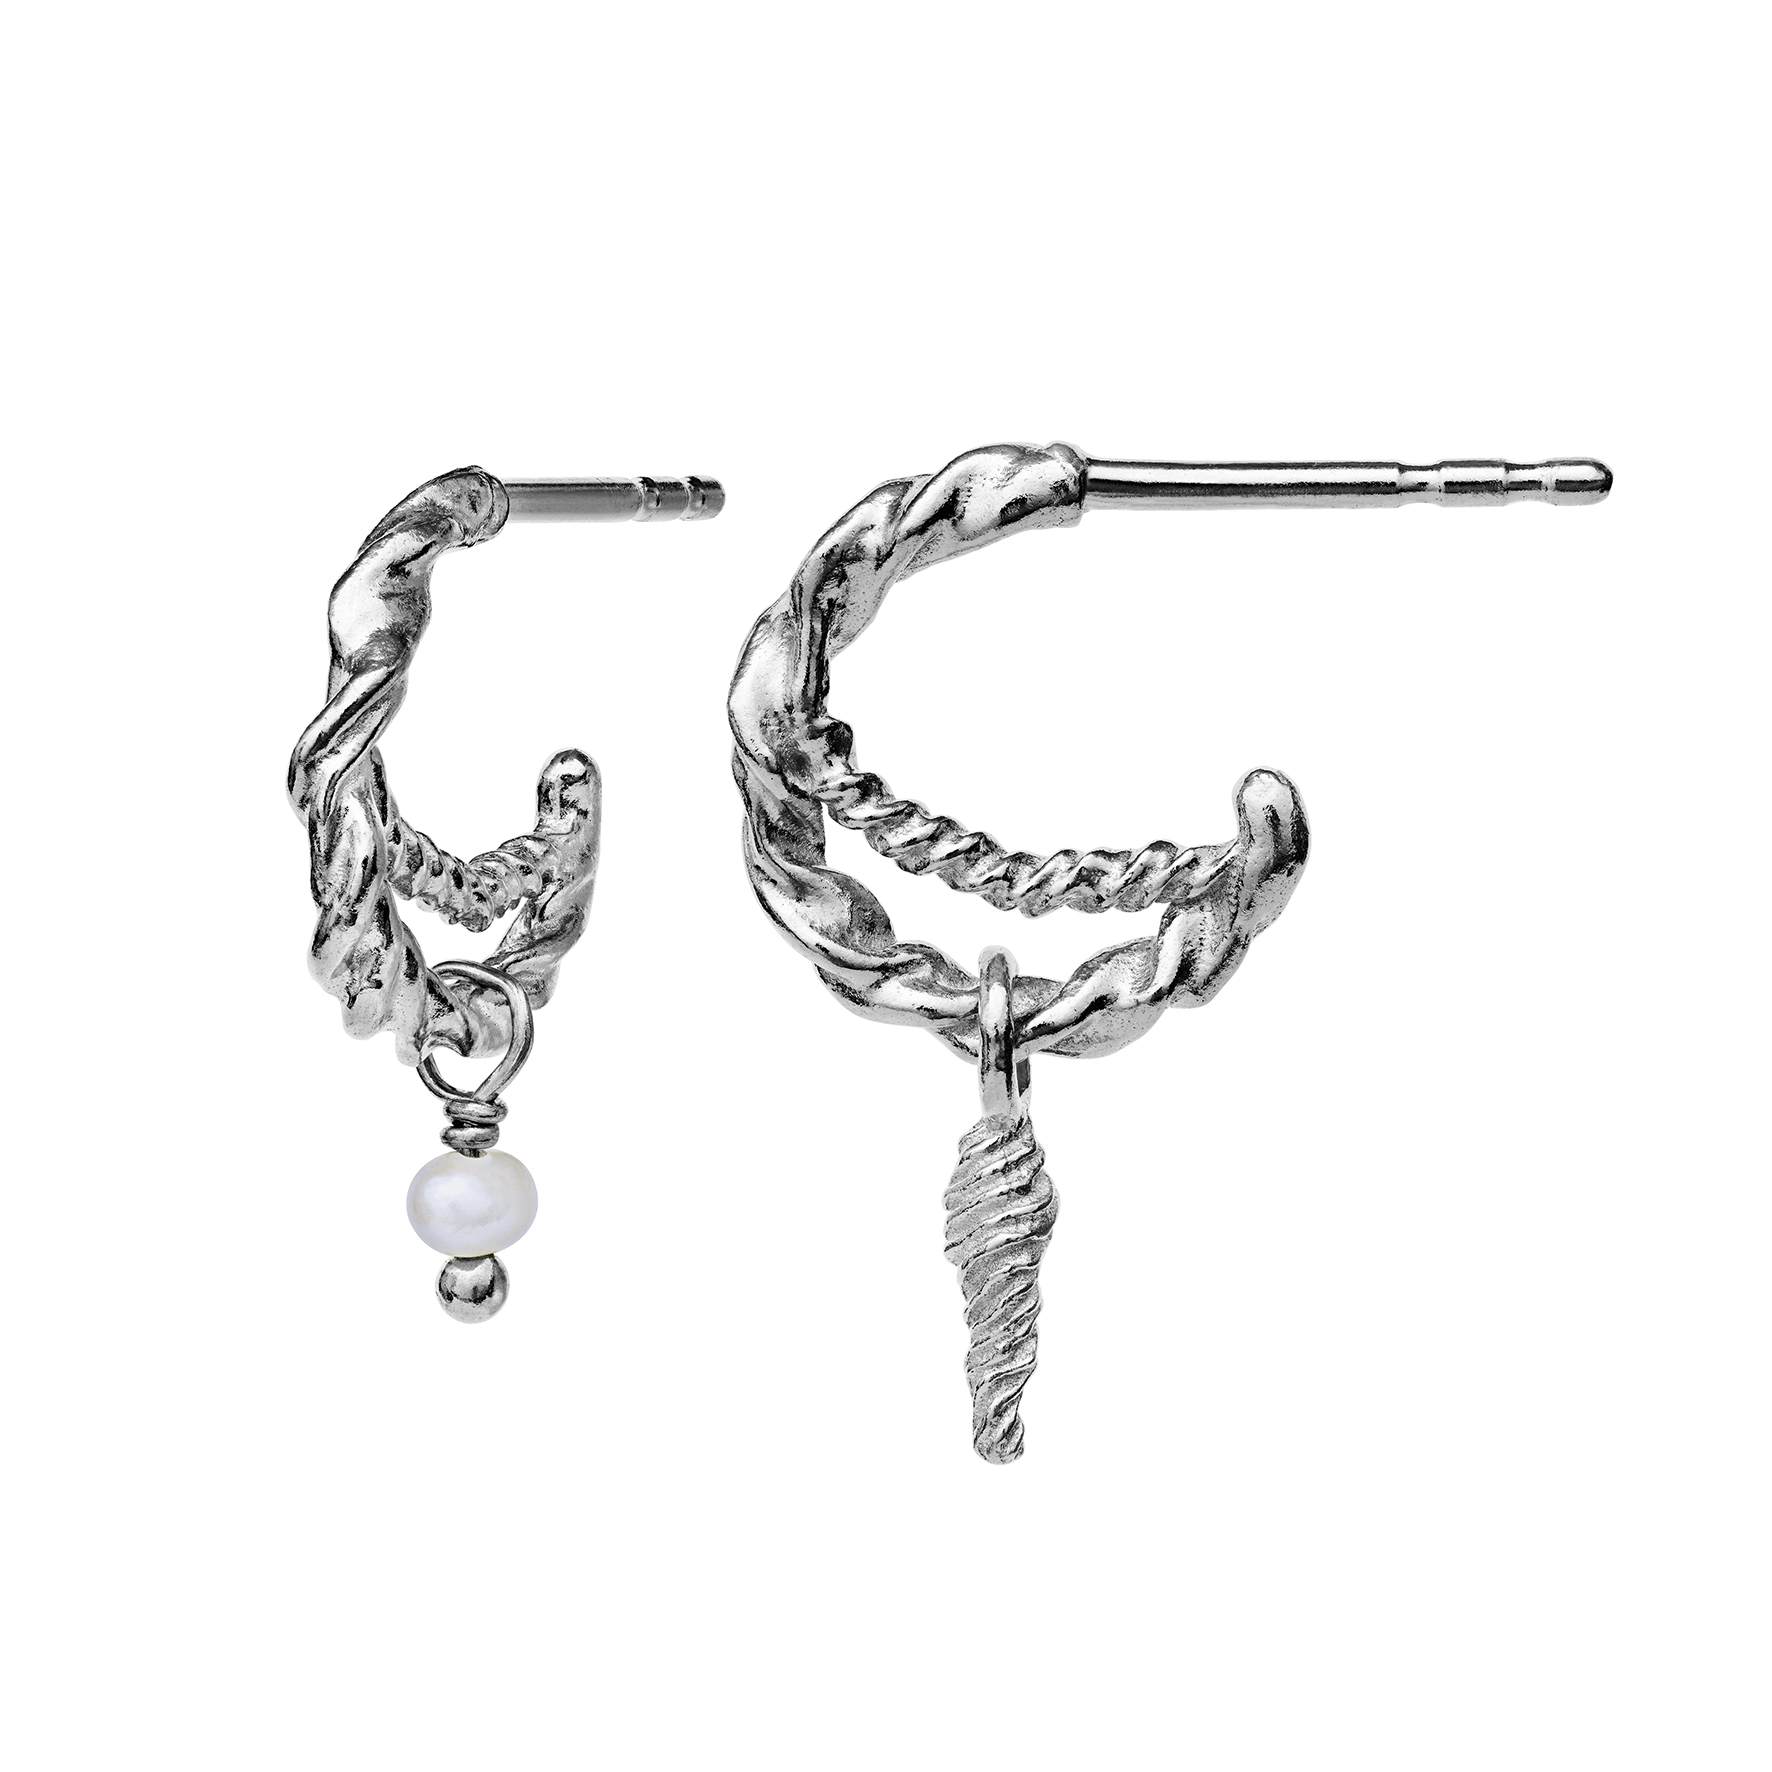 Duo Earrings from Maanesten in Silver Sterling 925|Freshwater Pearl